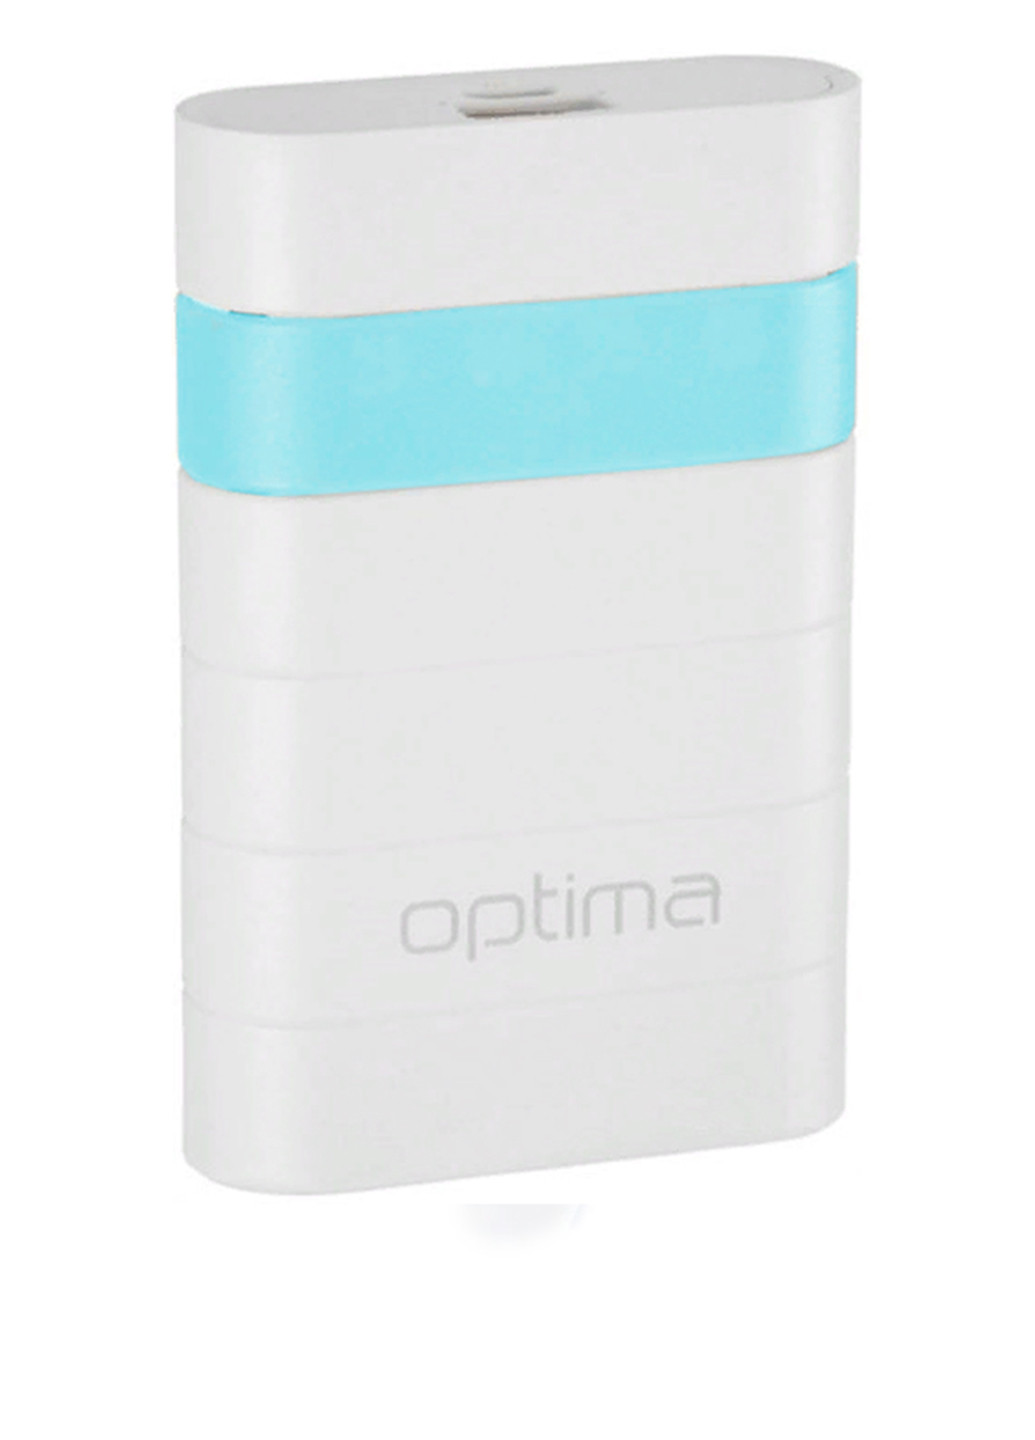 Універсальна батарея Promo Series 6000mAh White / Blue Optima op-6 (130135461)